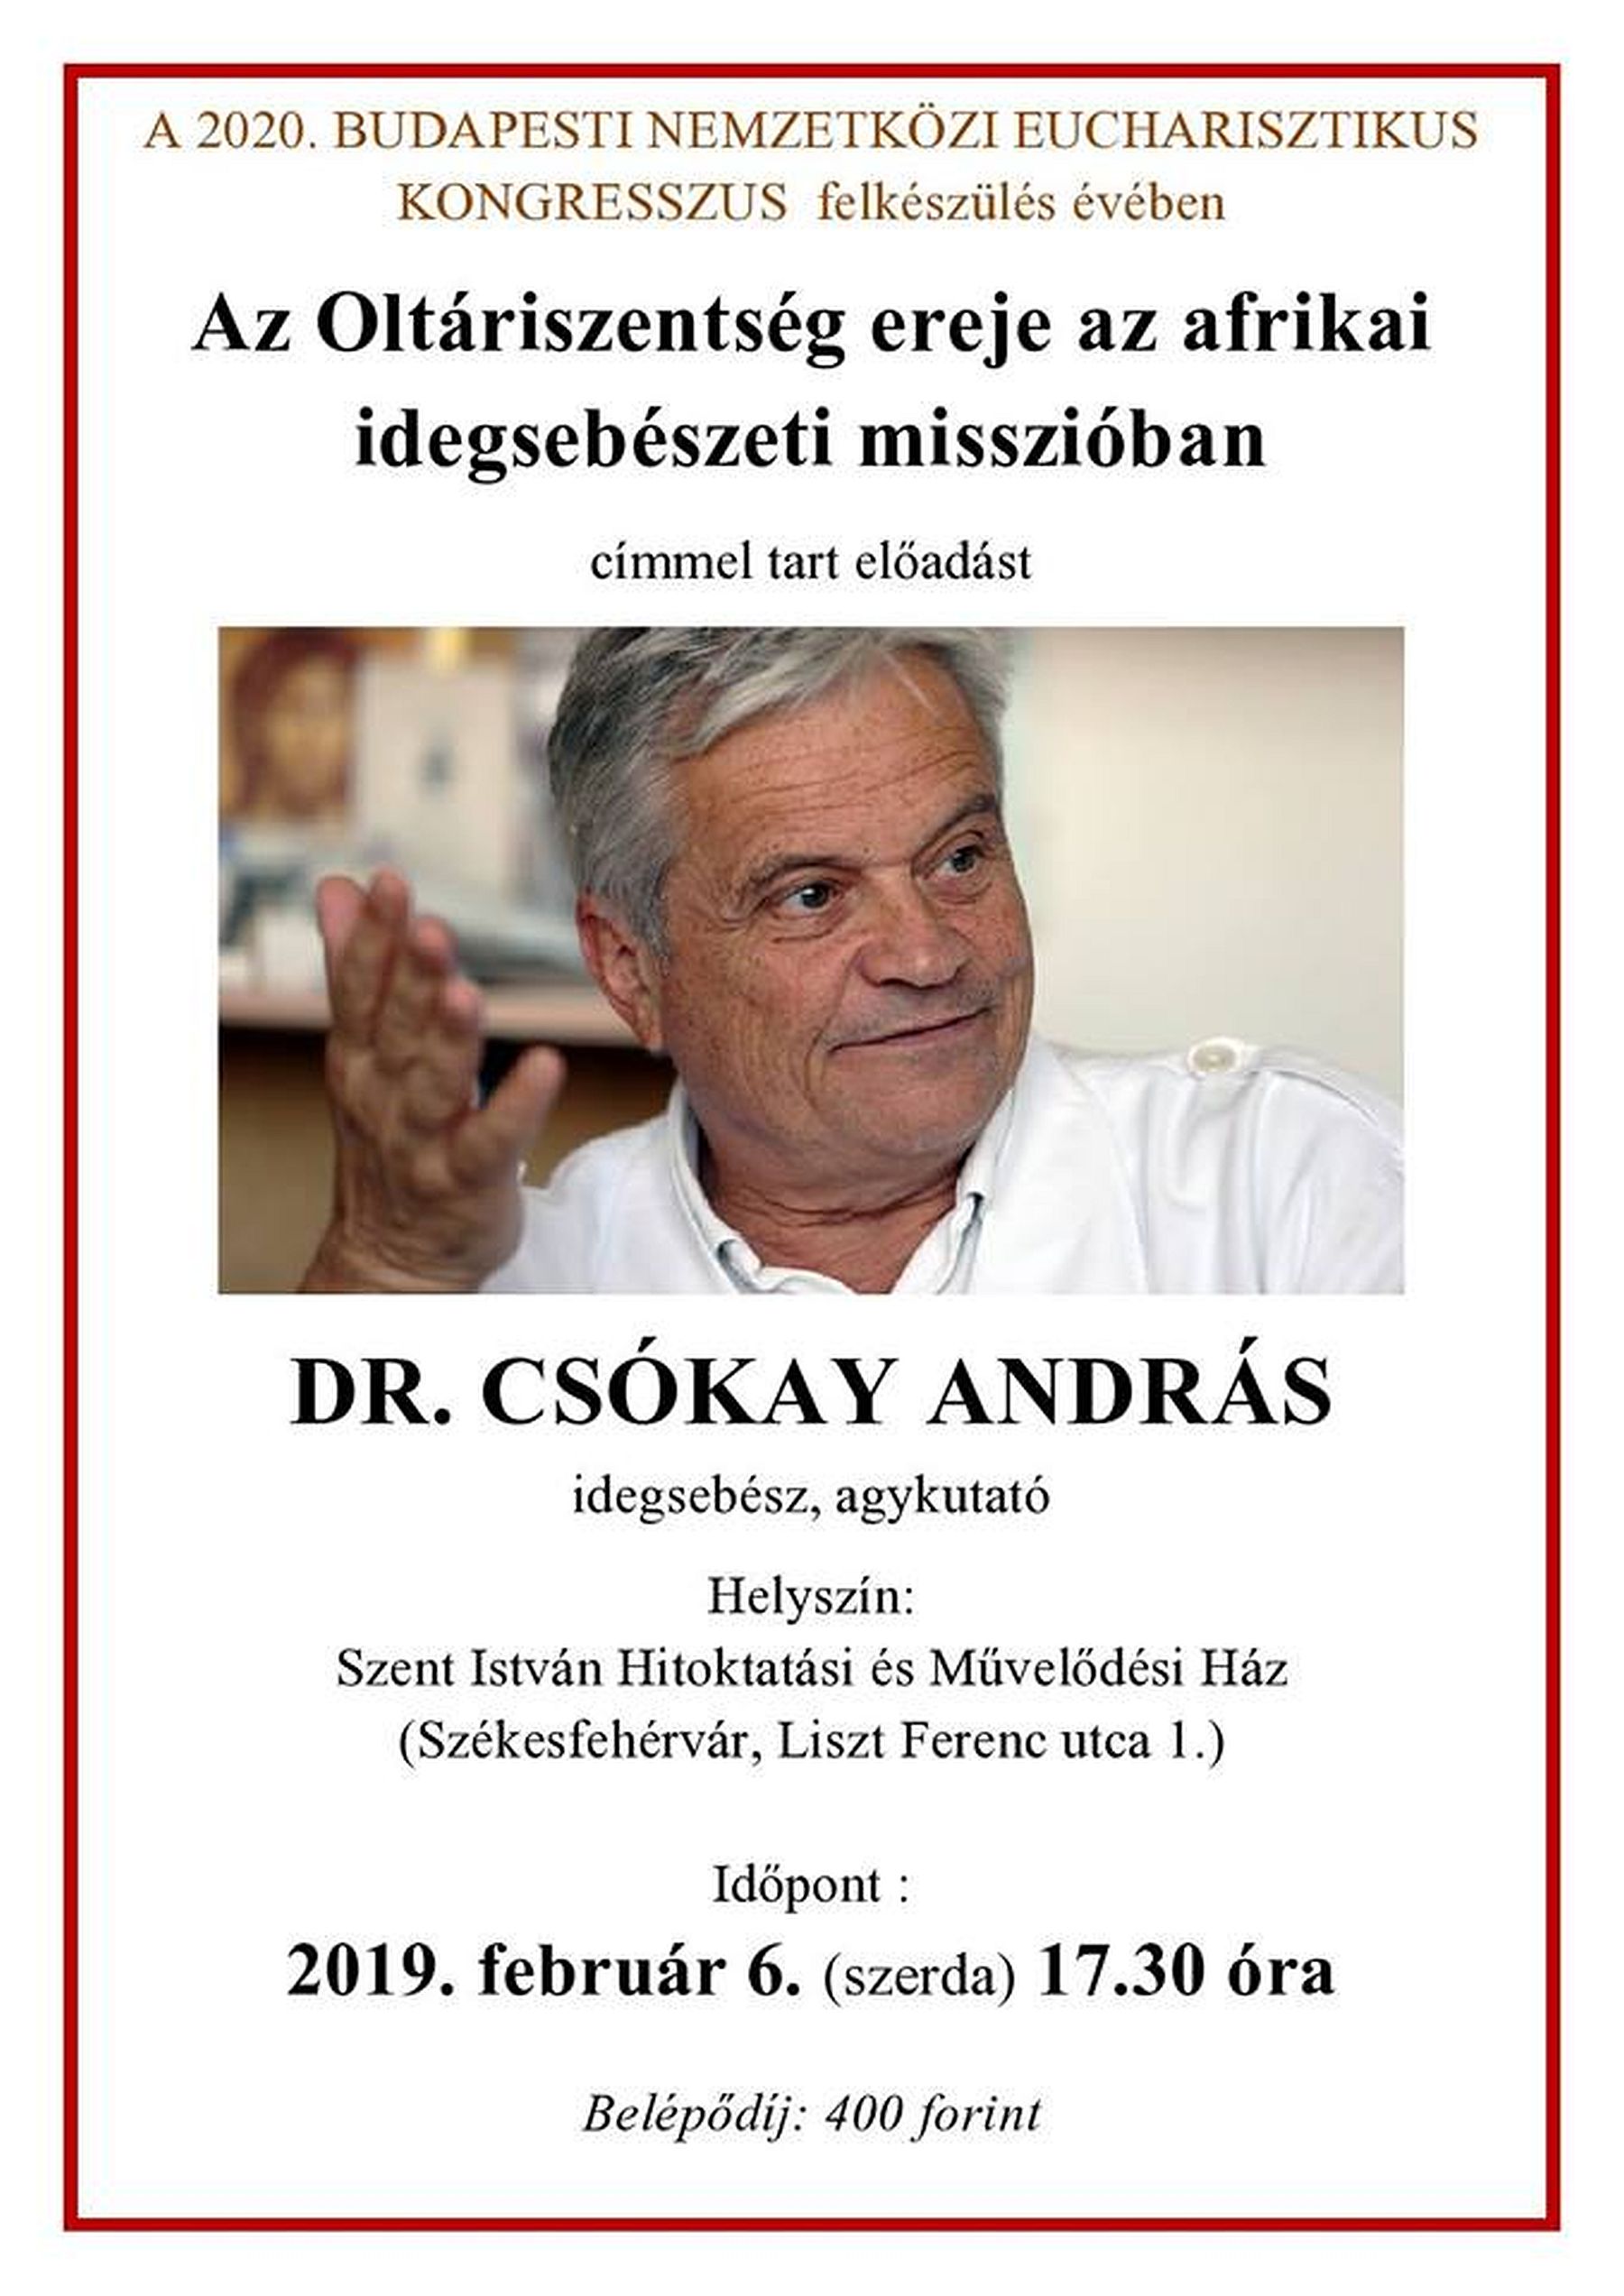 Dr. Csókay András, idegsebész, agykutató előadása a Szent István Művelődési Házban